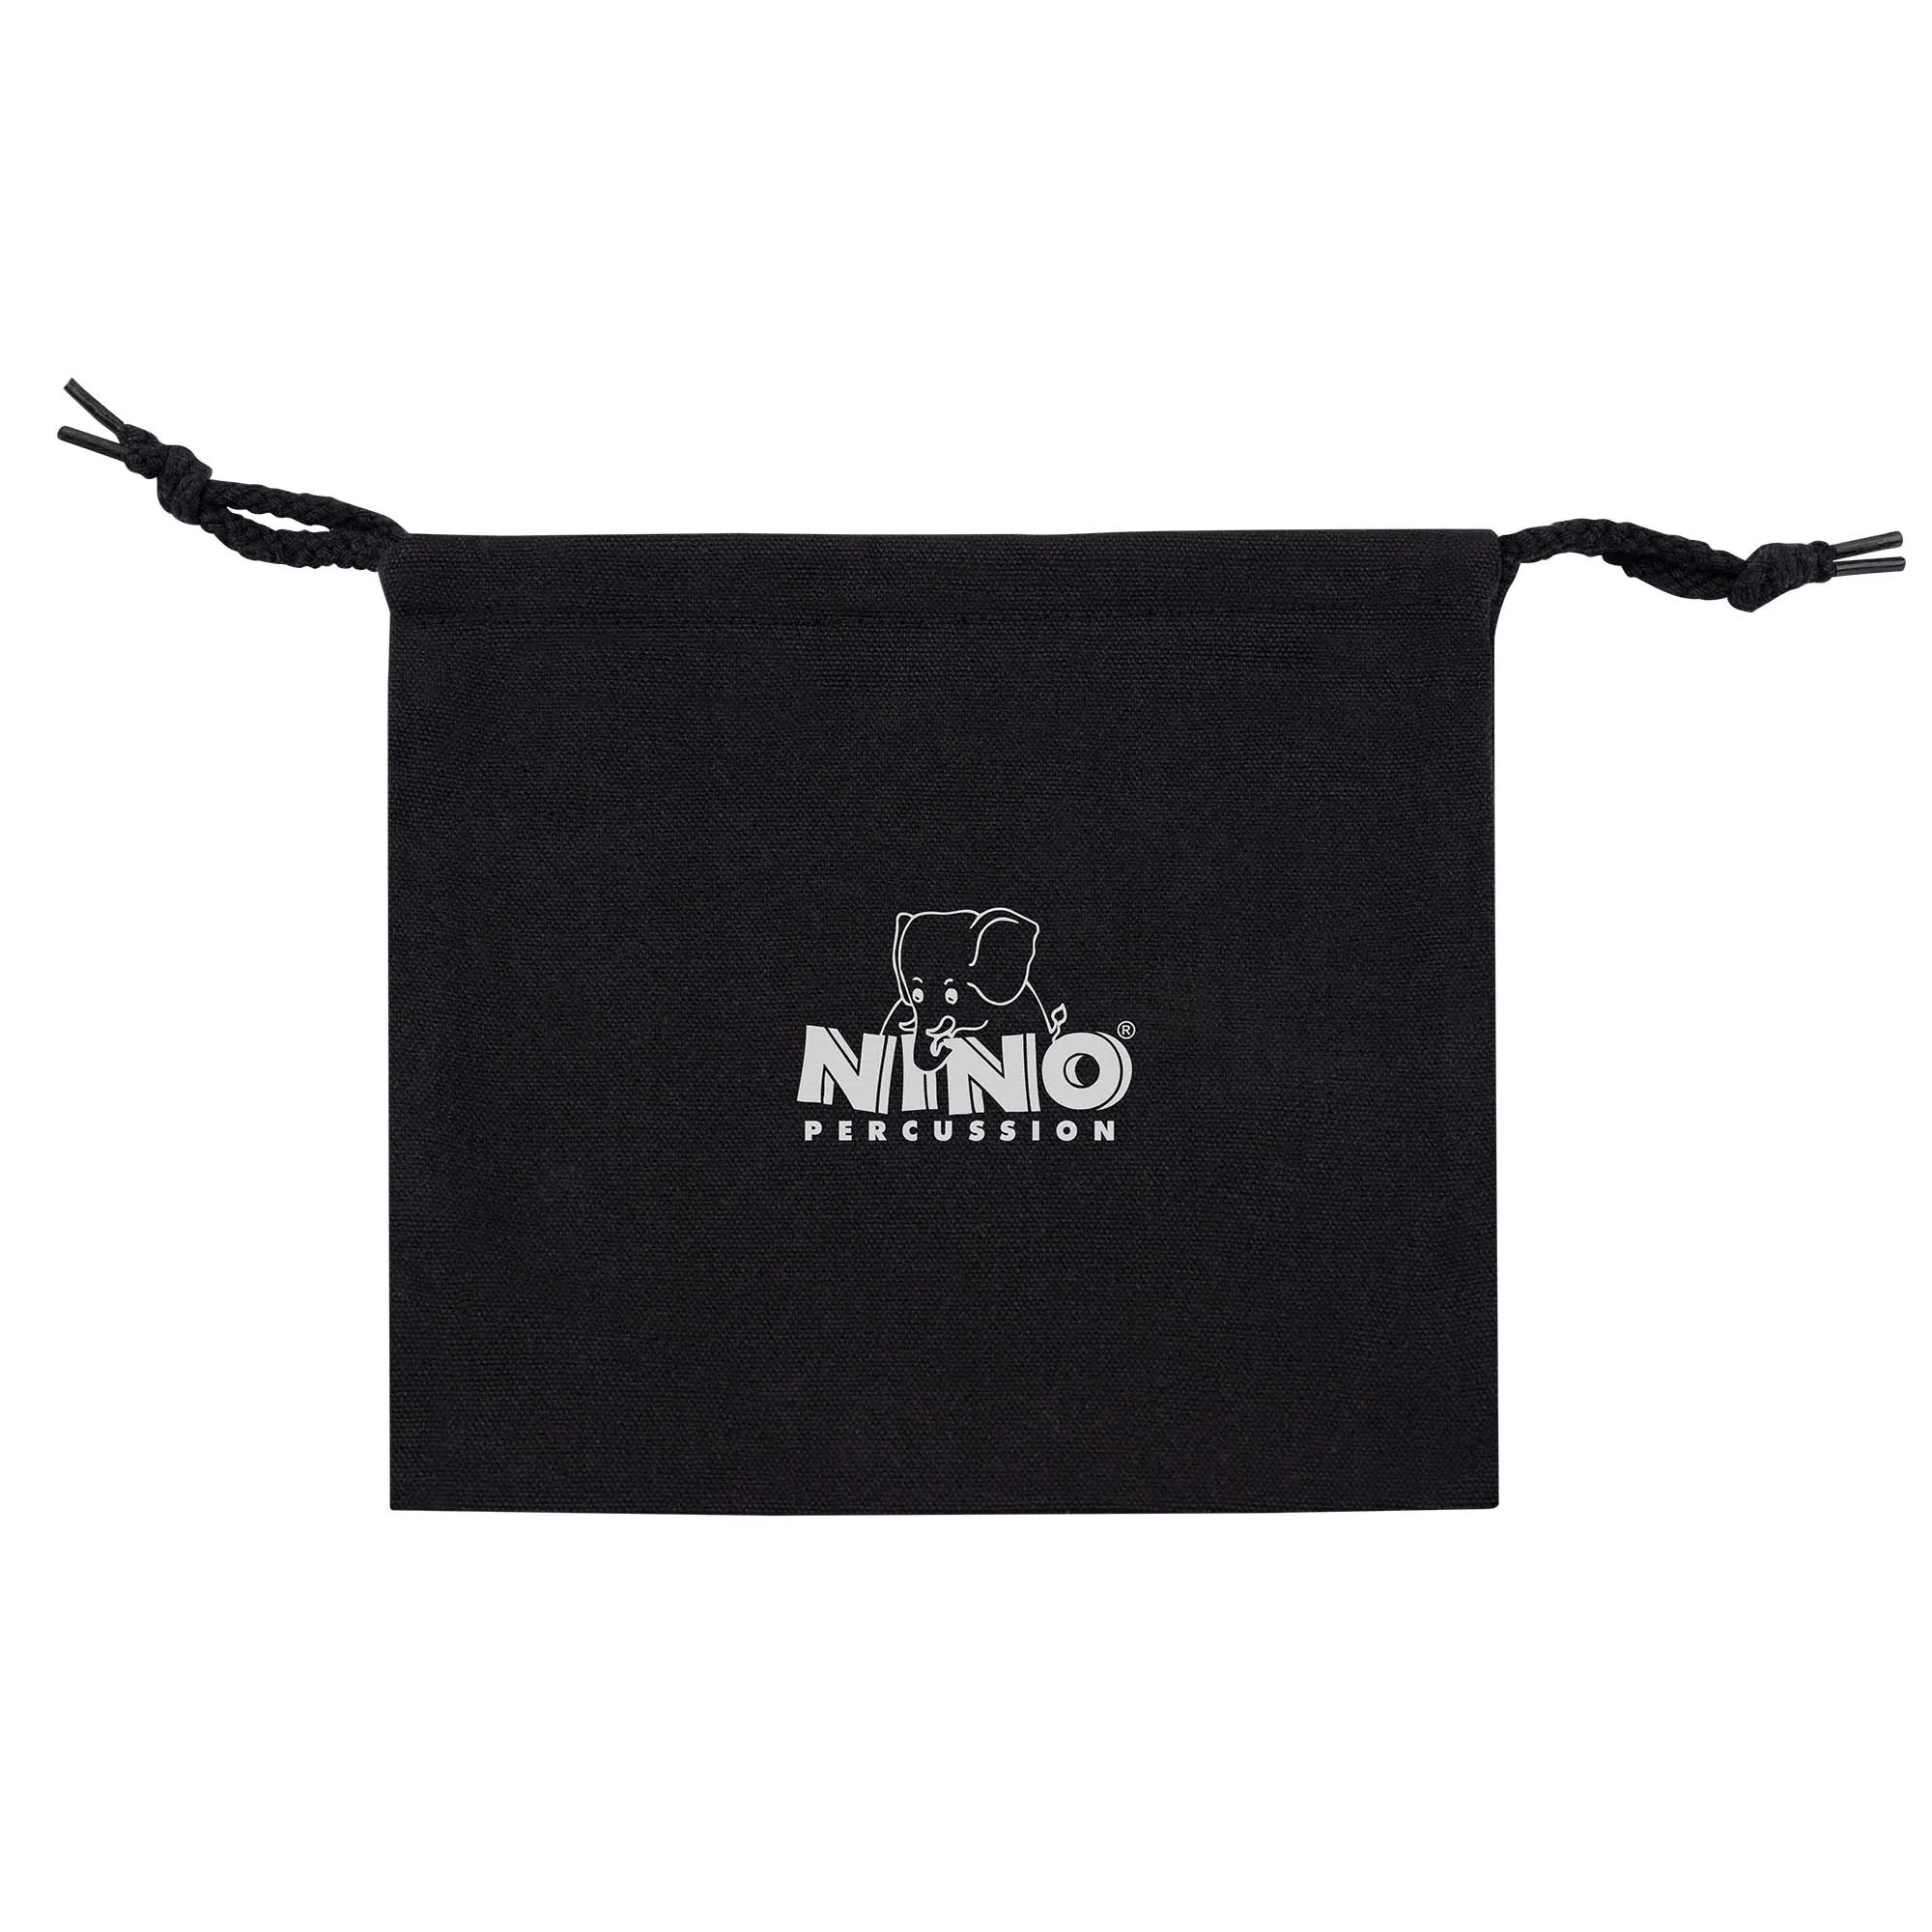 NINO982 Mini-Steel-Tongue-Drum Mint-Green